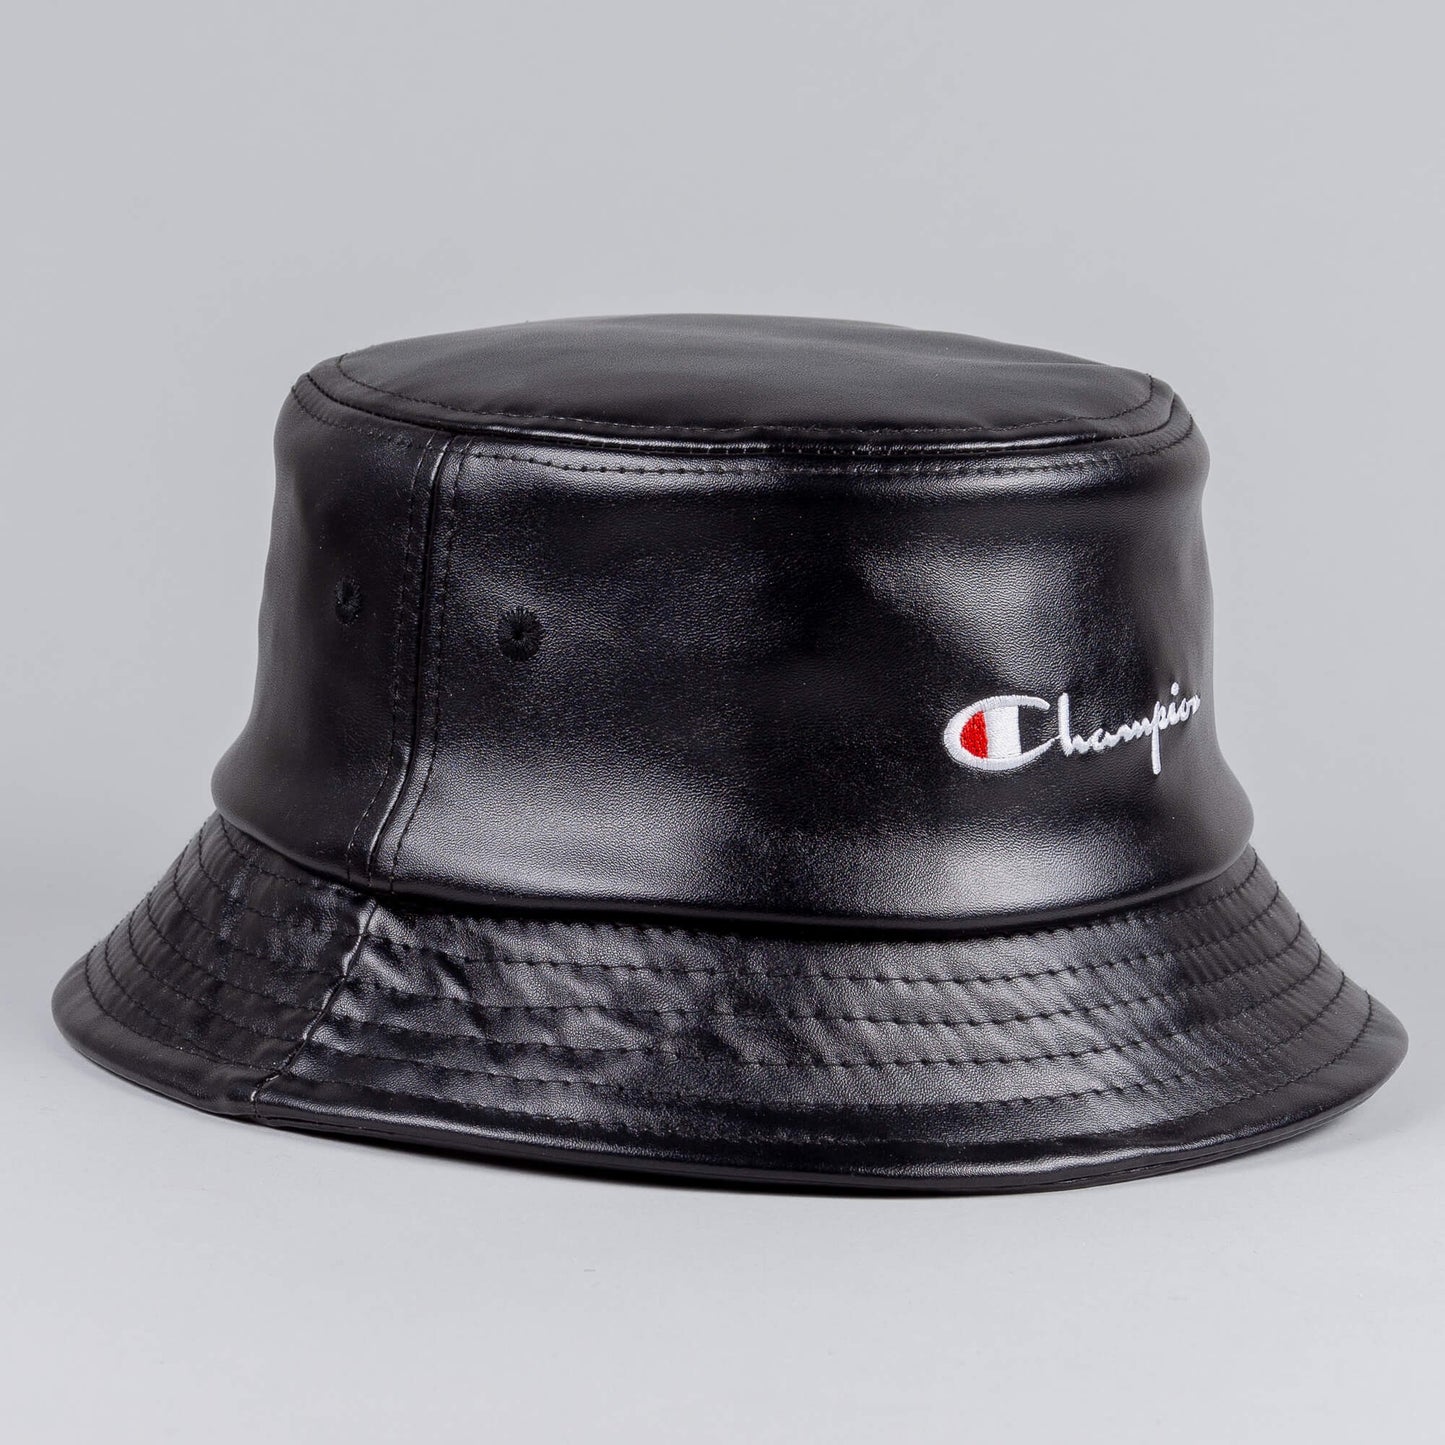 Champion Premium Rwss 1952 Bucket Cap Black